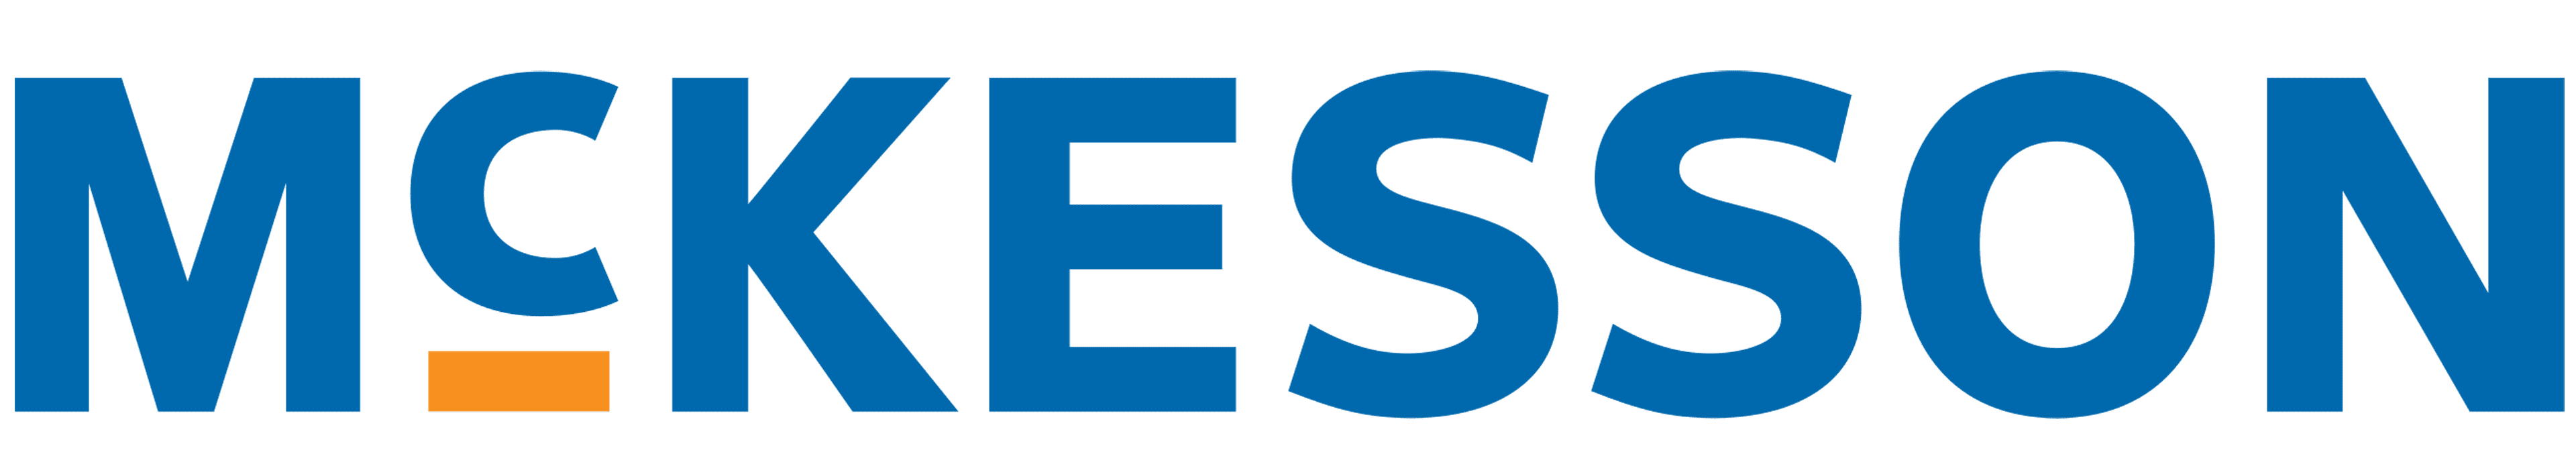 mckesson logo 1